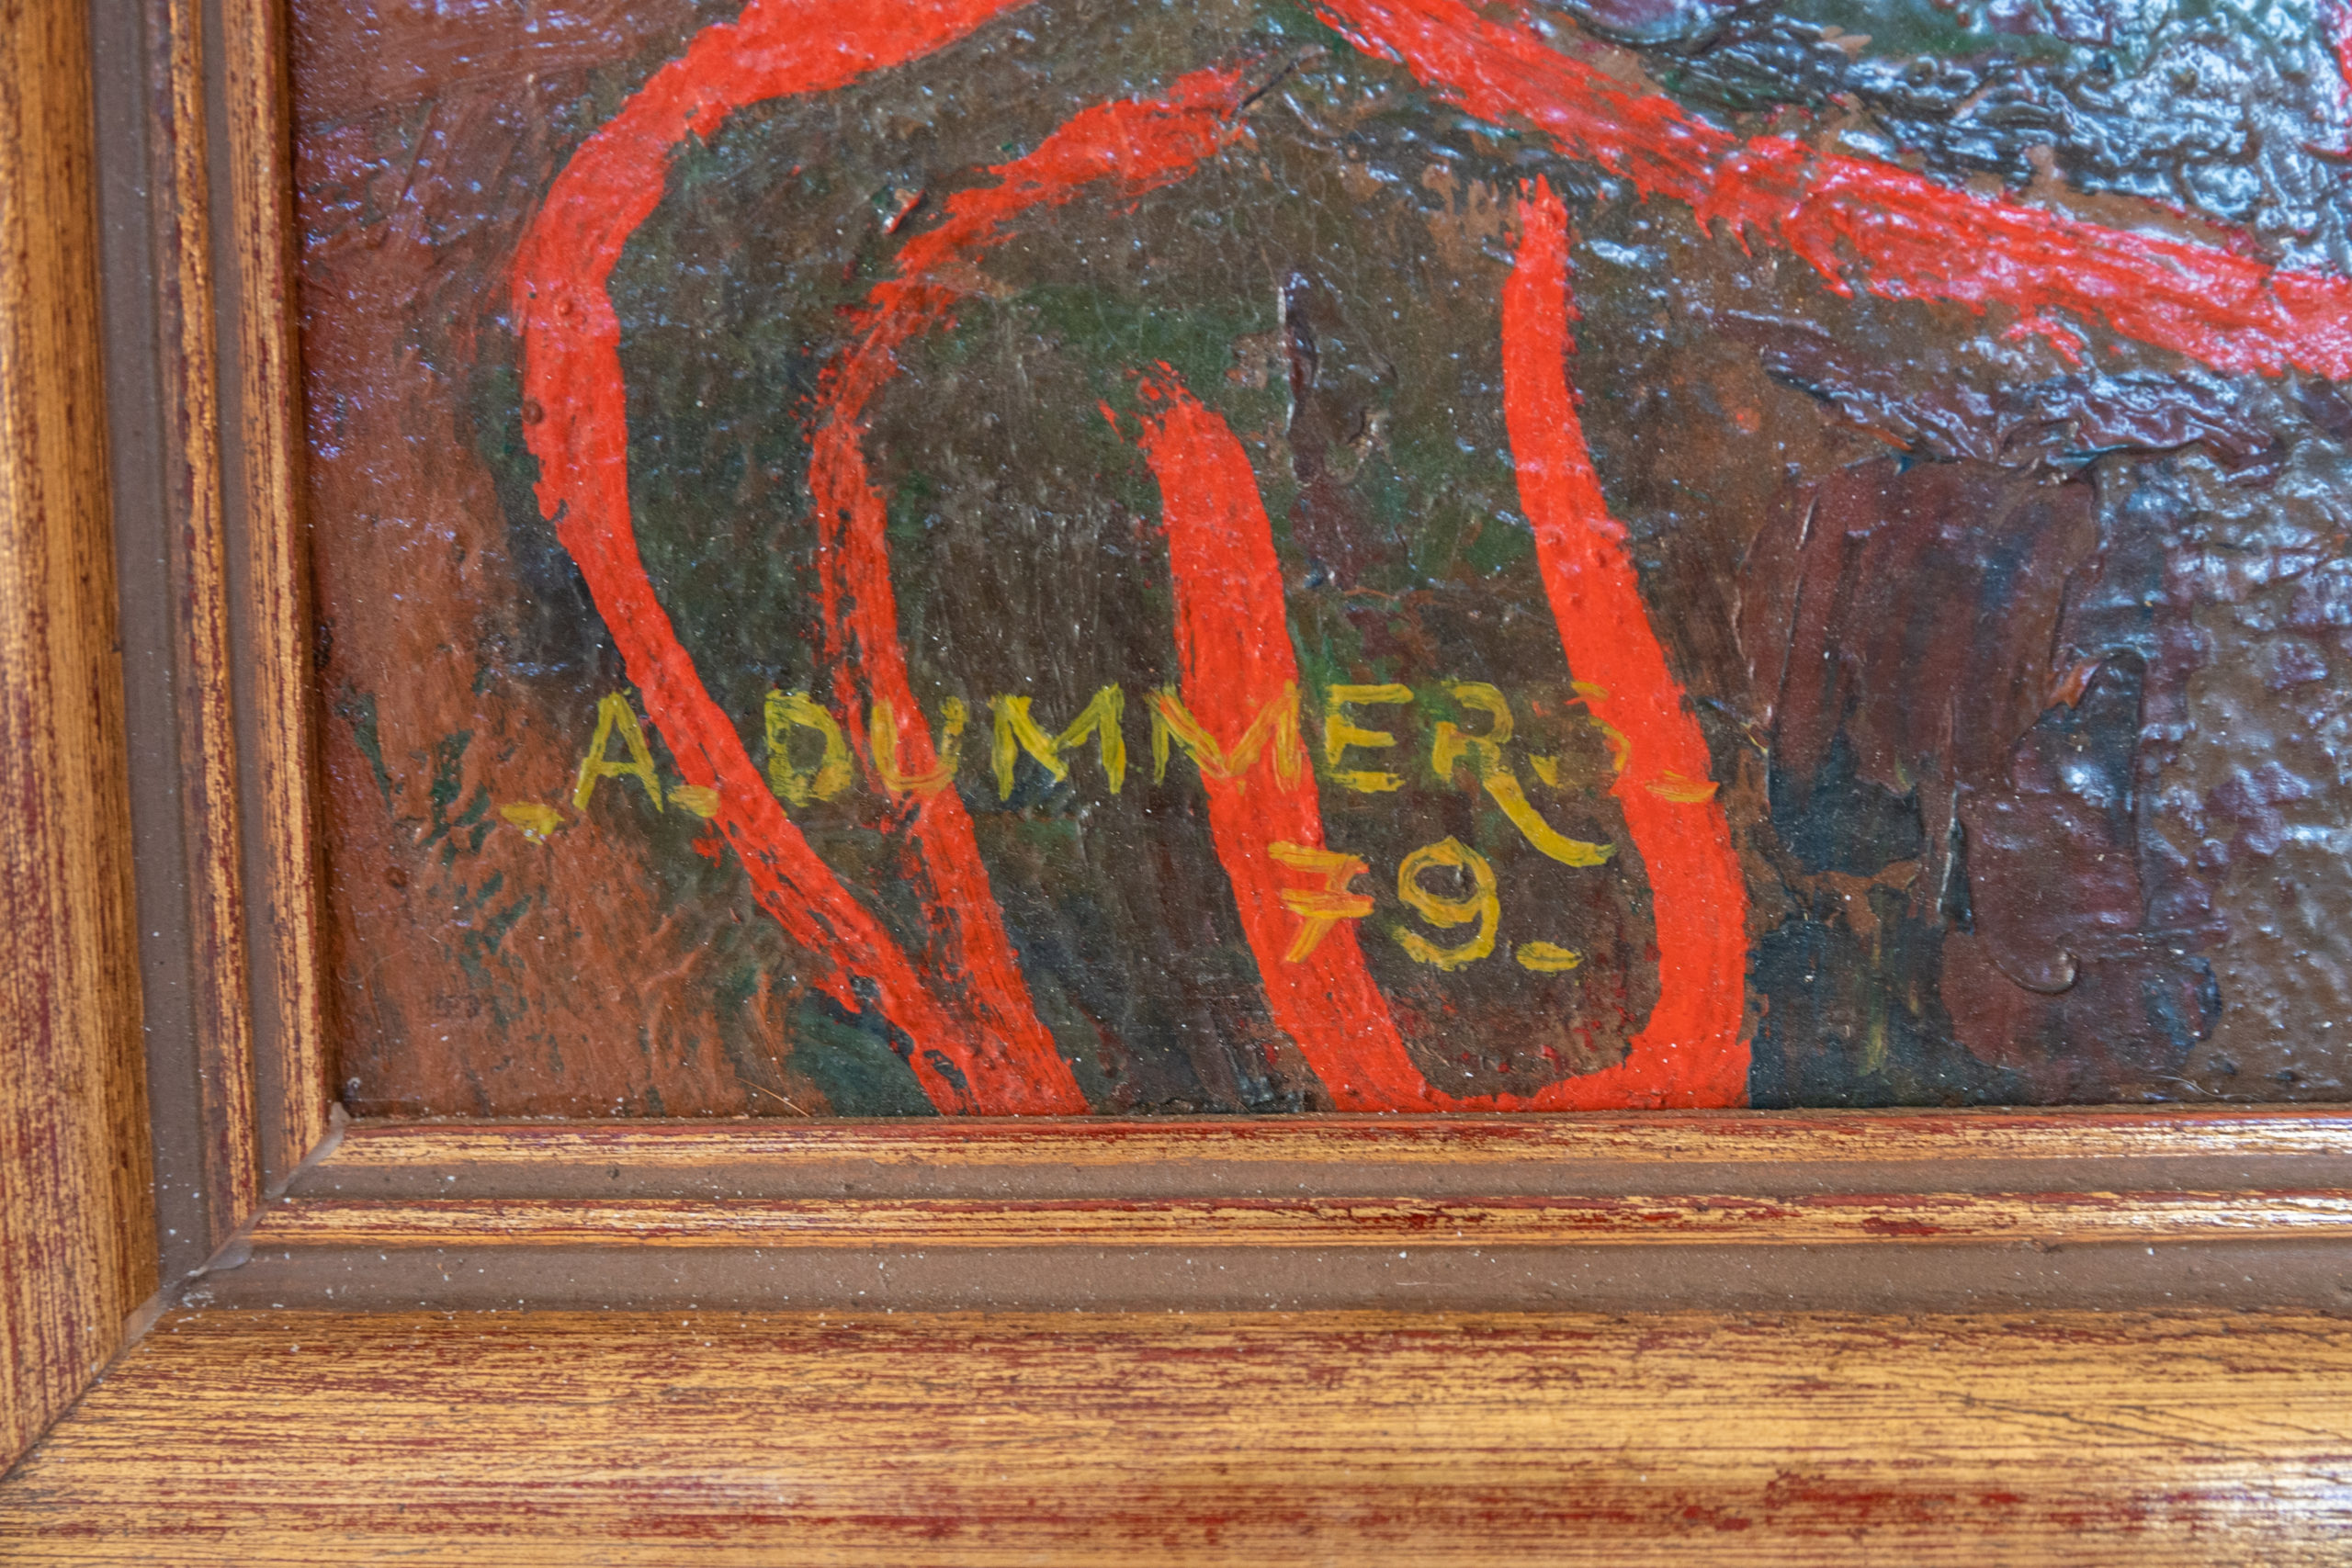 Albert-dummers-école-liégeoise-peintre-belge-xxe-péniche-herstal-verviers-aurore-morisse-aurore-chestret5-antiquaire-antiquité11